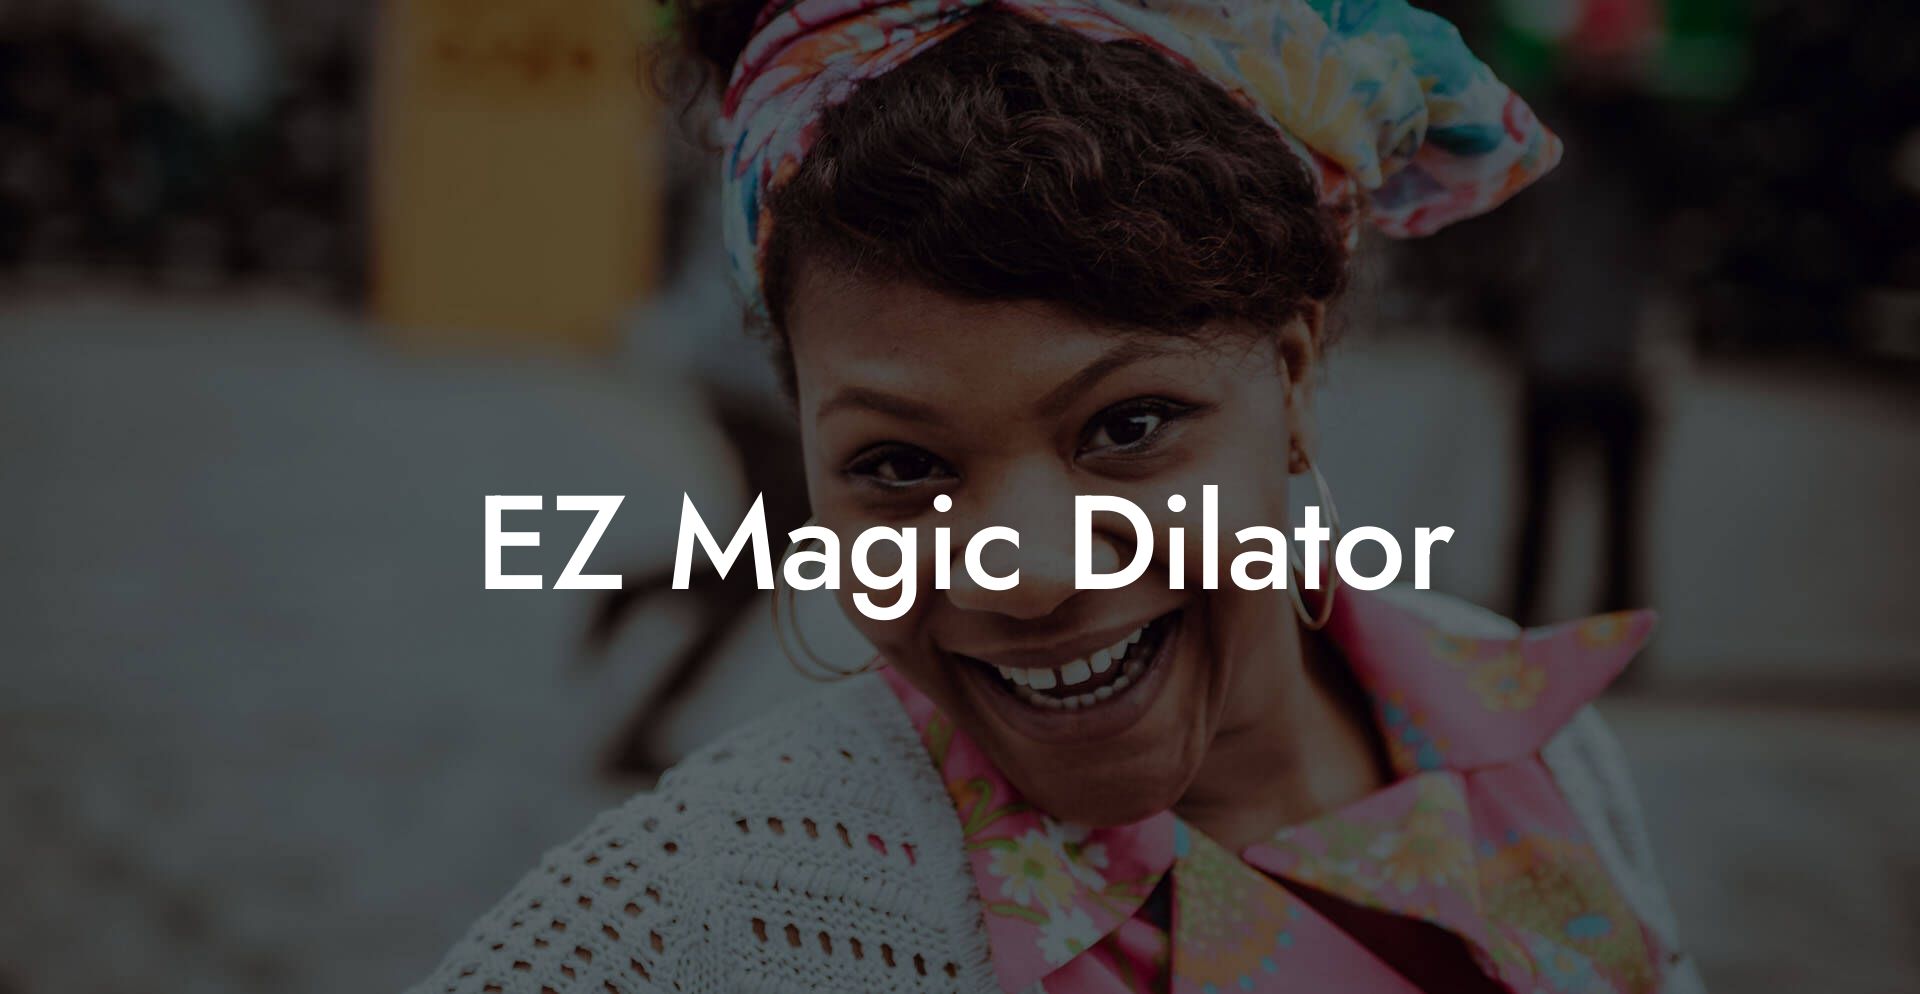 EZ Magic Dilator